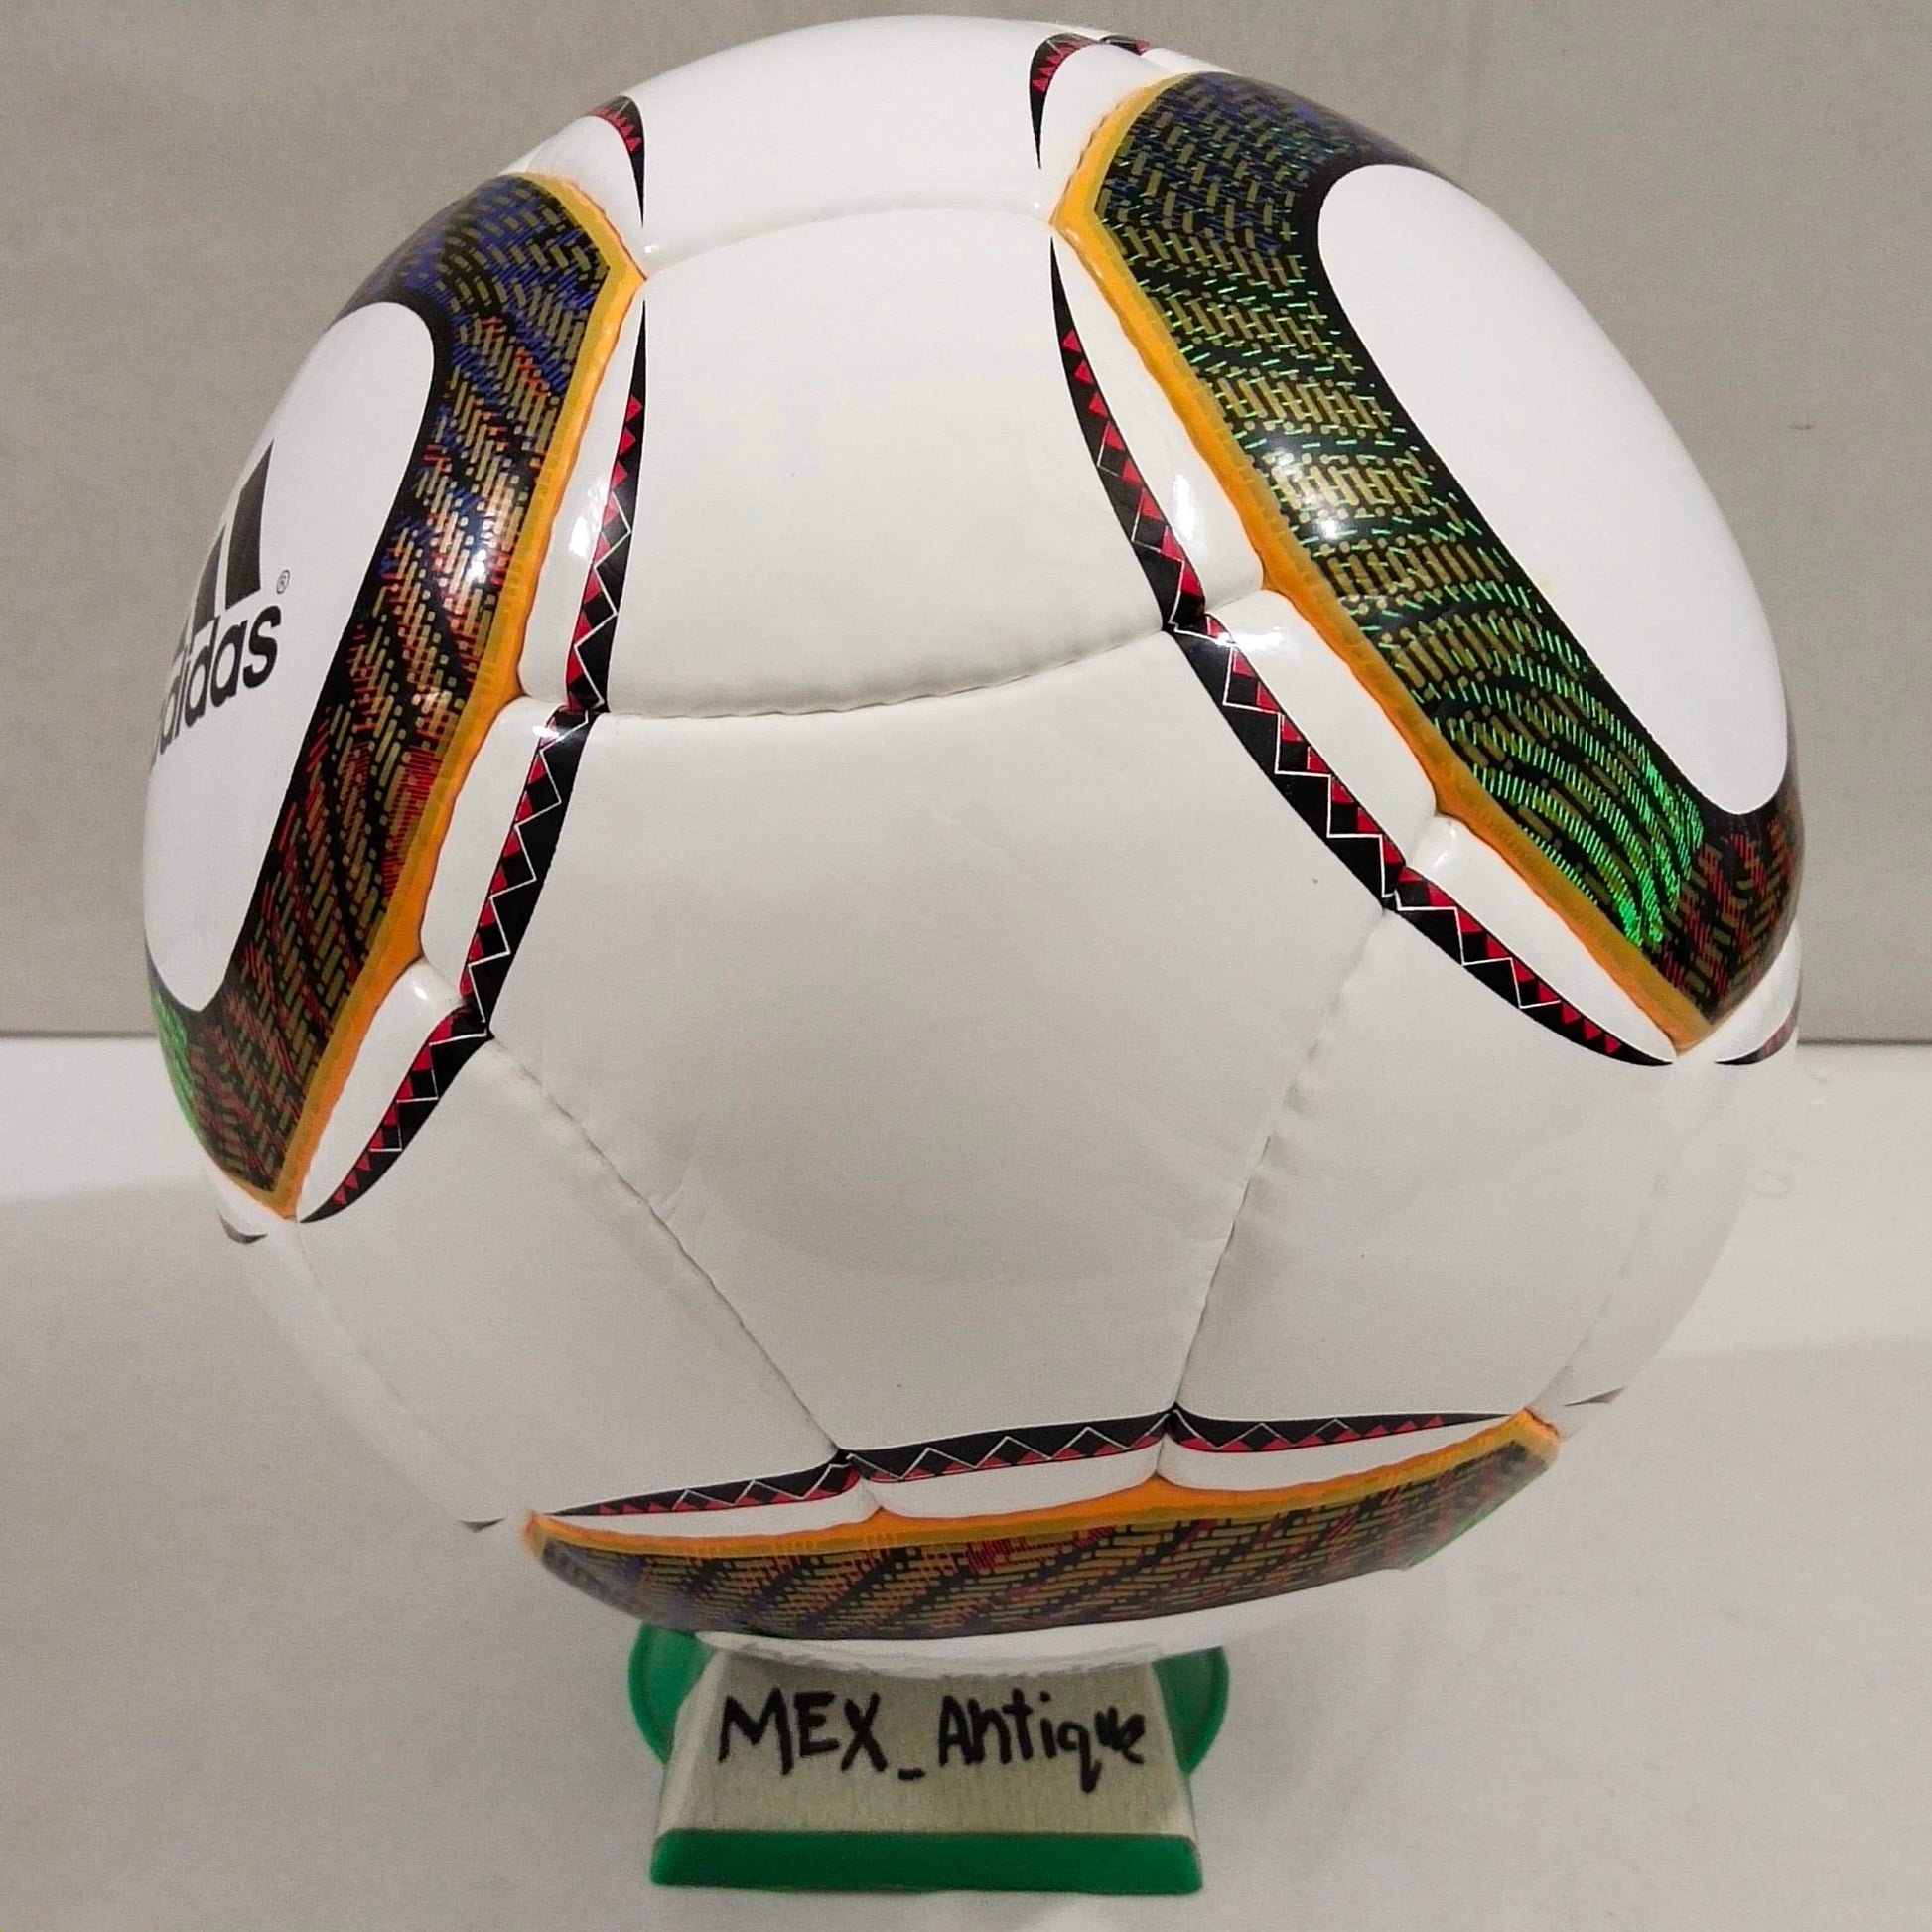 Adidas Jabulani Match Ball Glider | 2010 FIFA World Cup Ball | SIZE 5 04